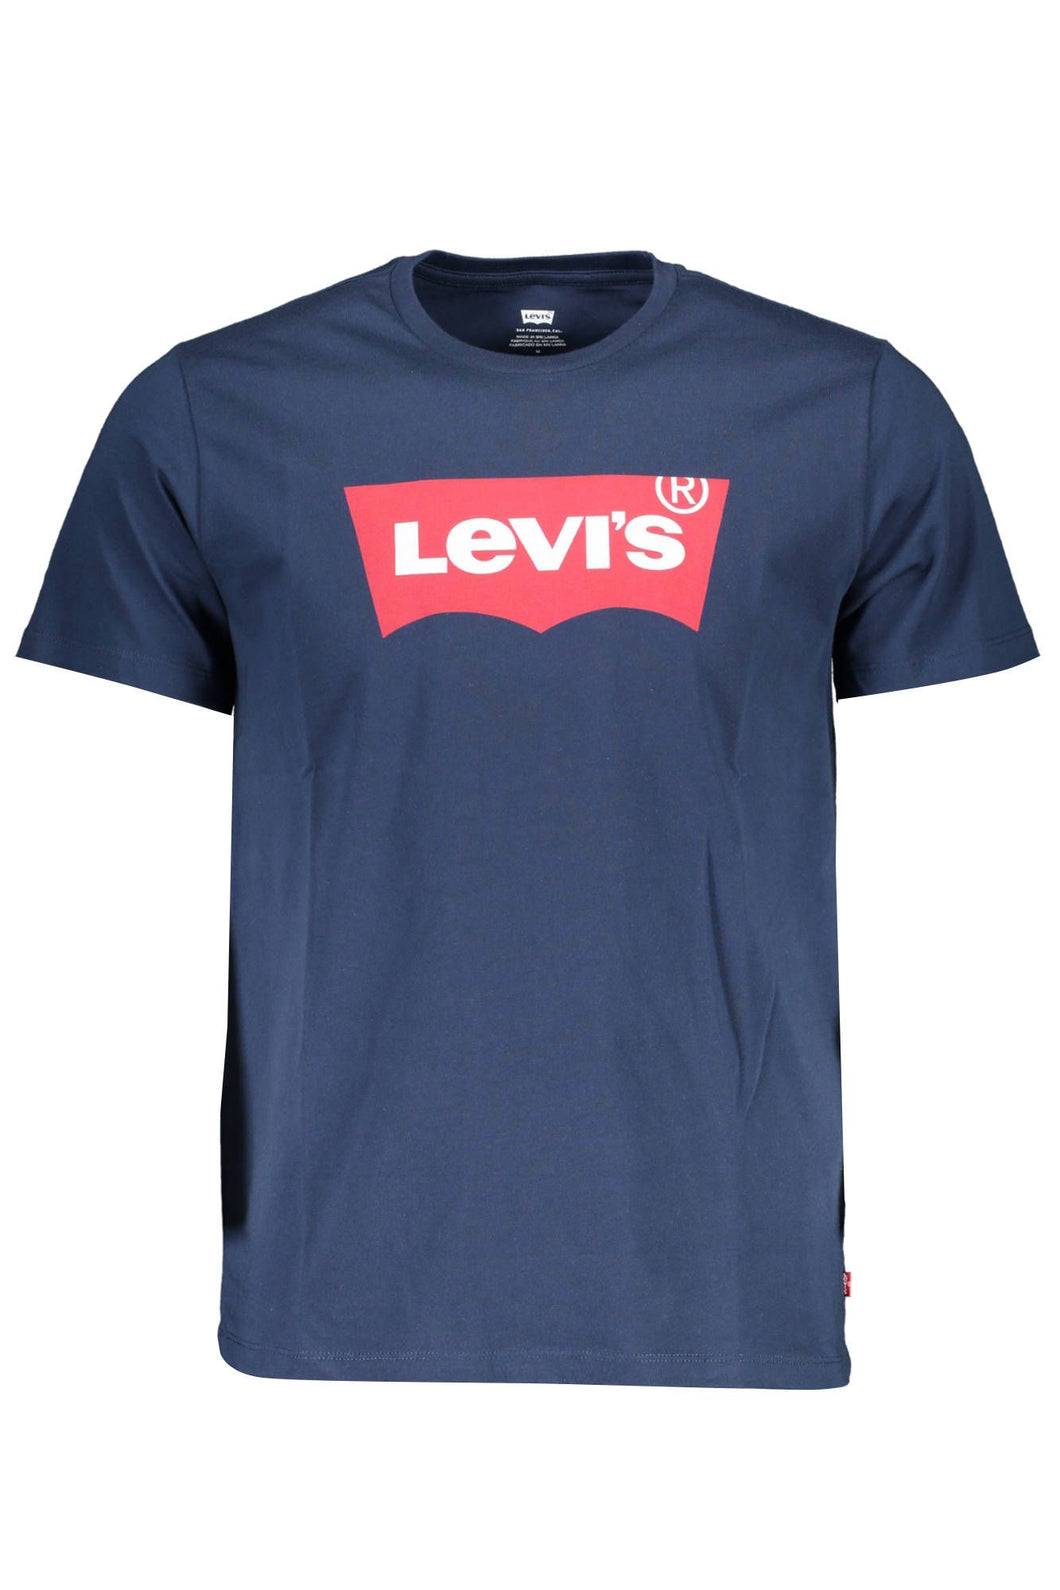 Levi's Blue Cotton T-Shirt